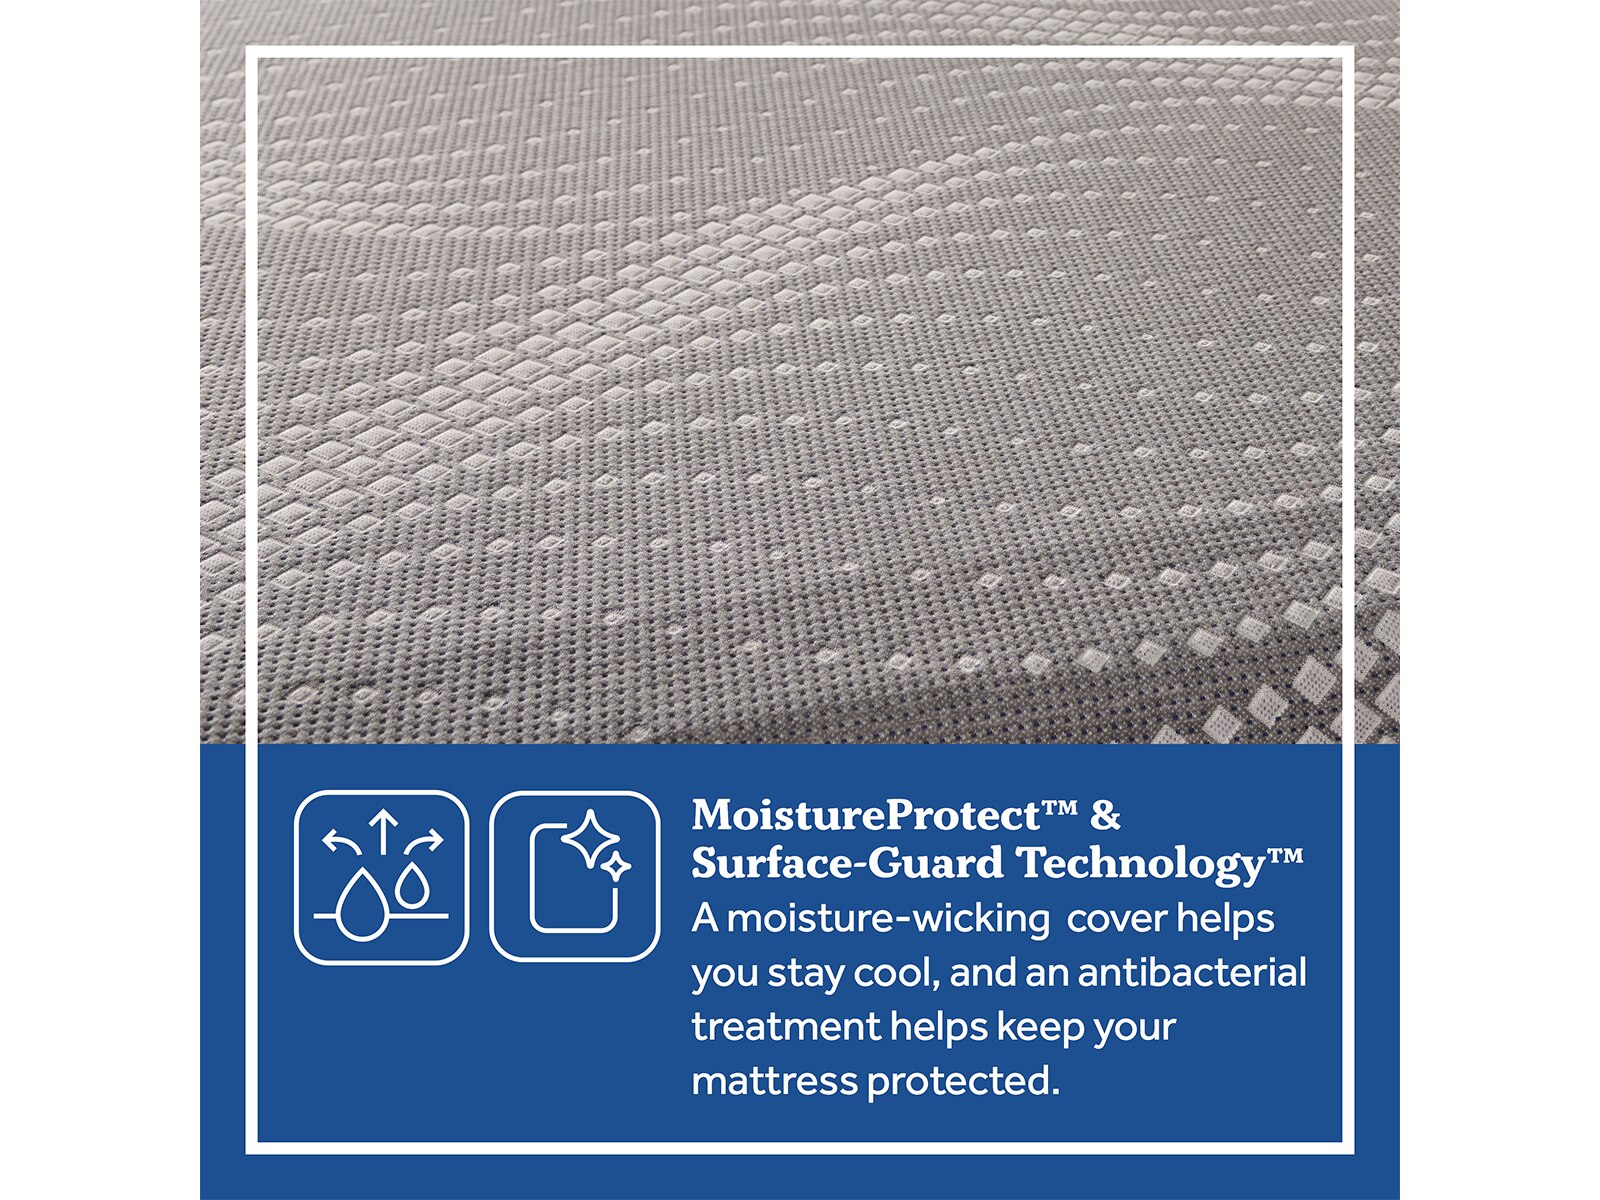 posturepedic mattress pad review